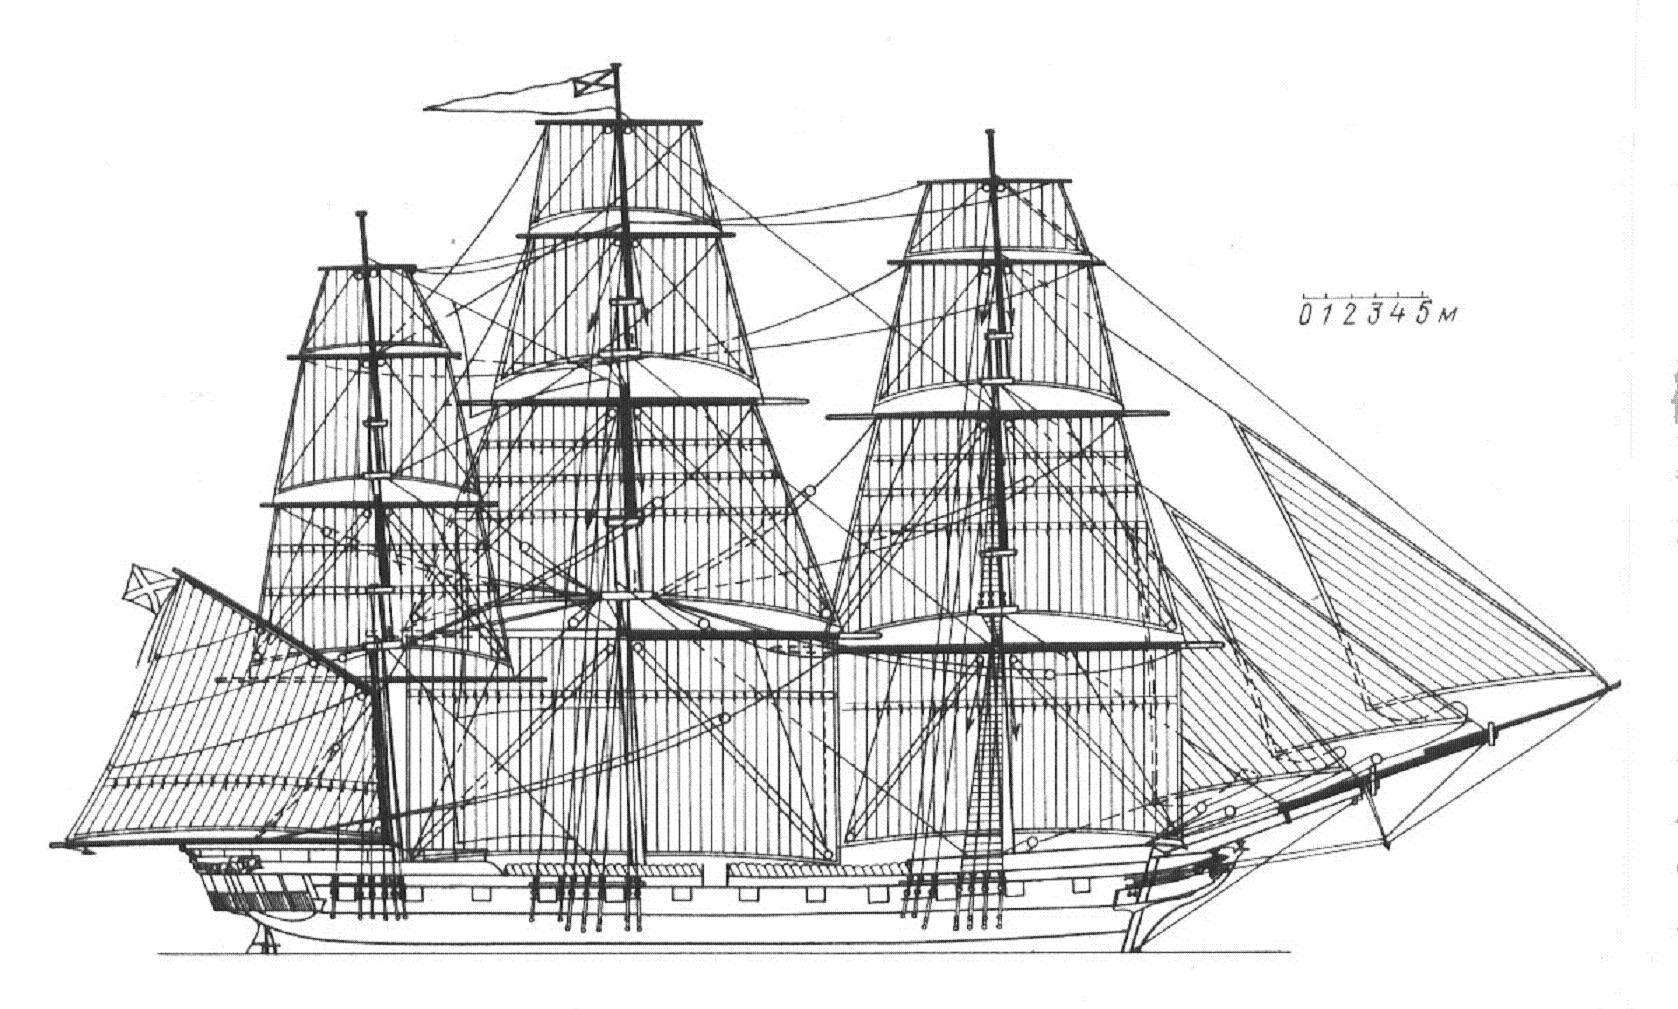 Nadejda-1845чертёж парусного вооружения.jpg